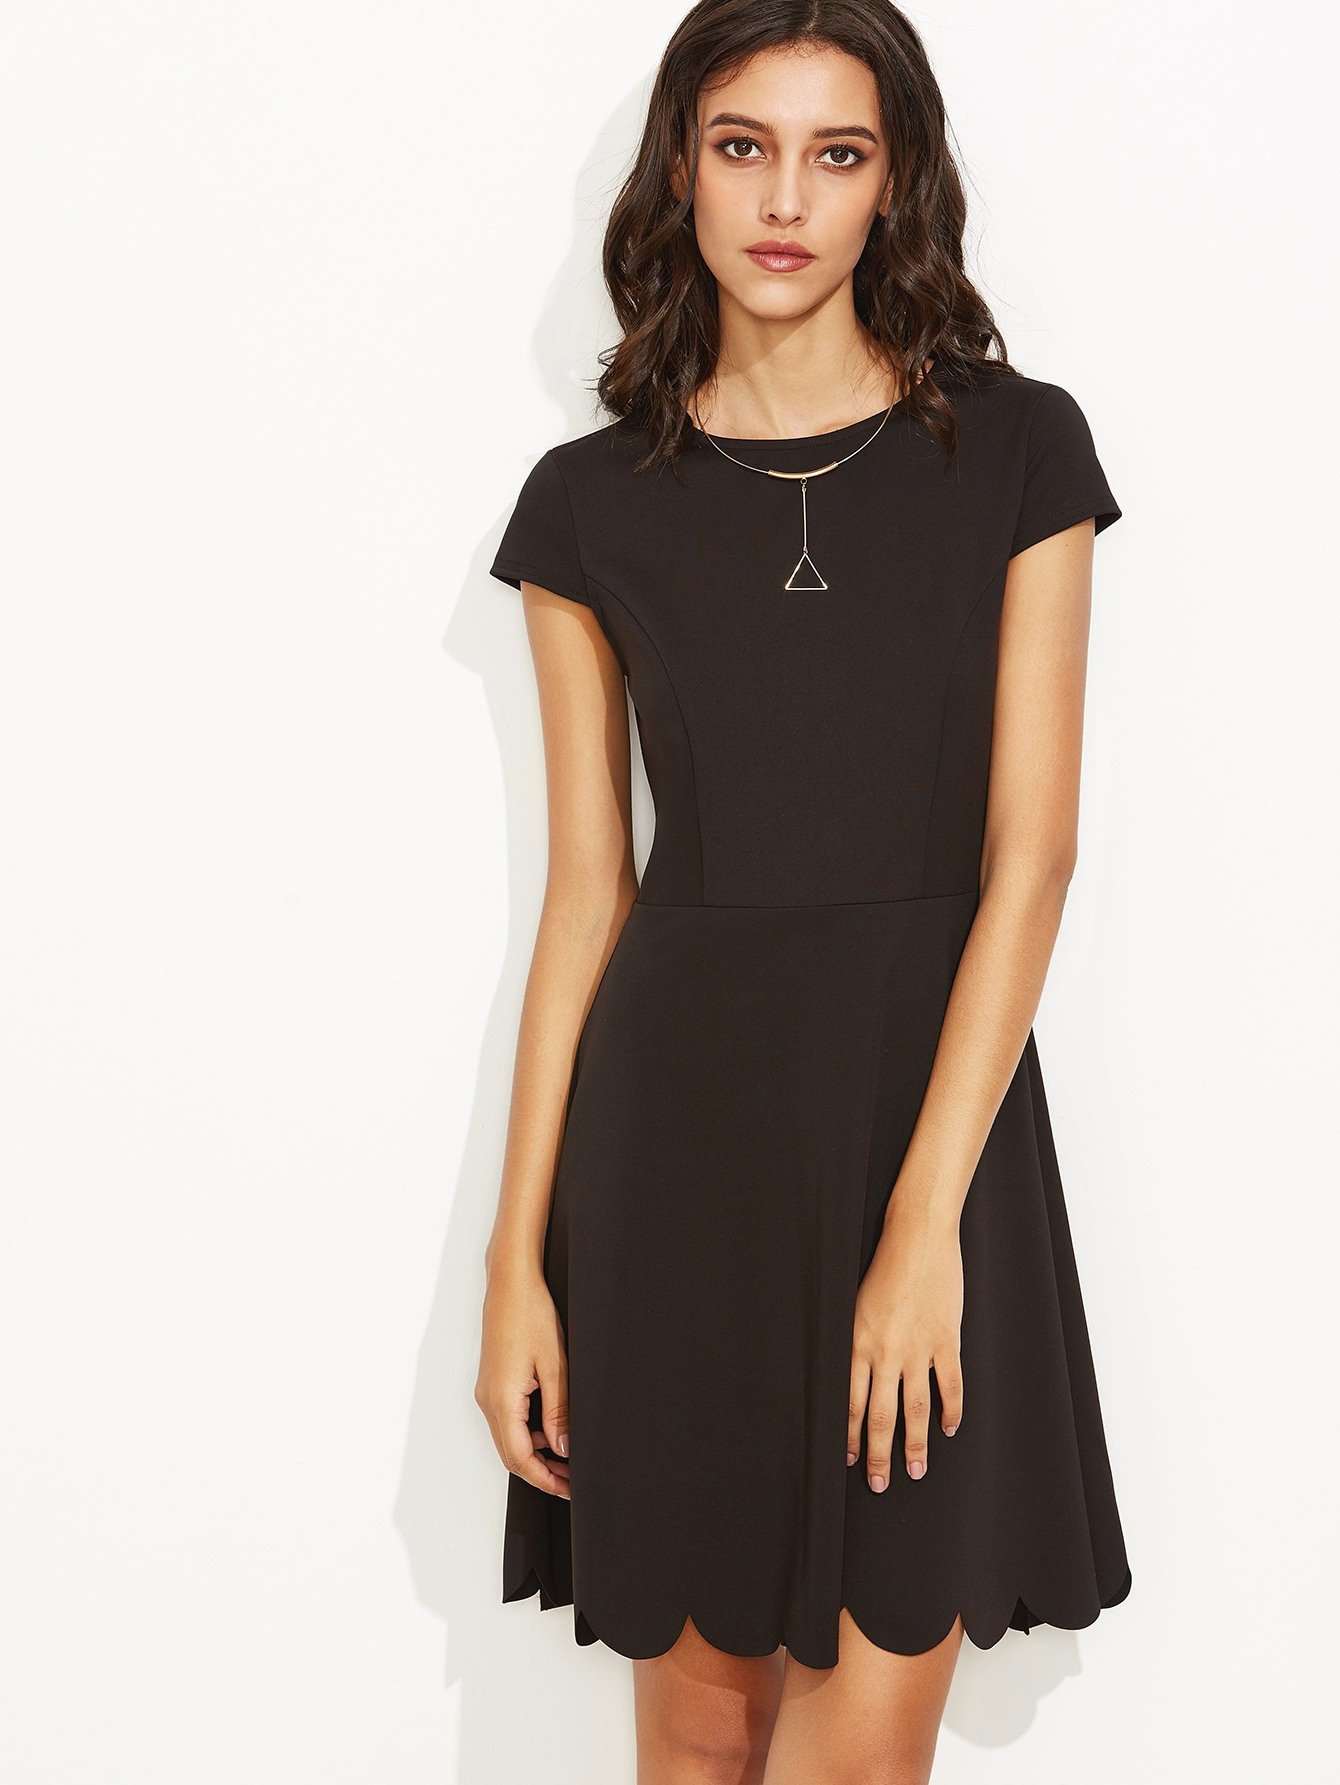 20 Einzigartig Kleid Elegant Kurz StylishDesigner Luxus Kleid Elegant Kurz Boutique